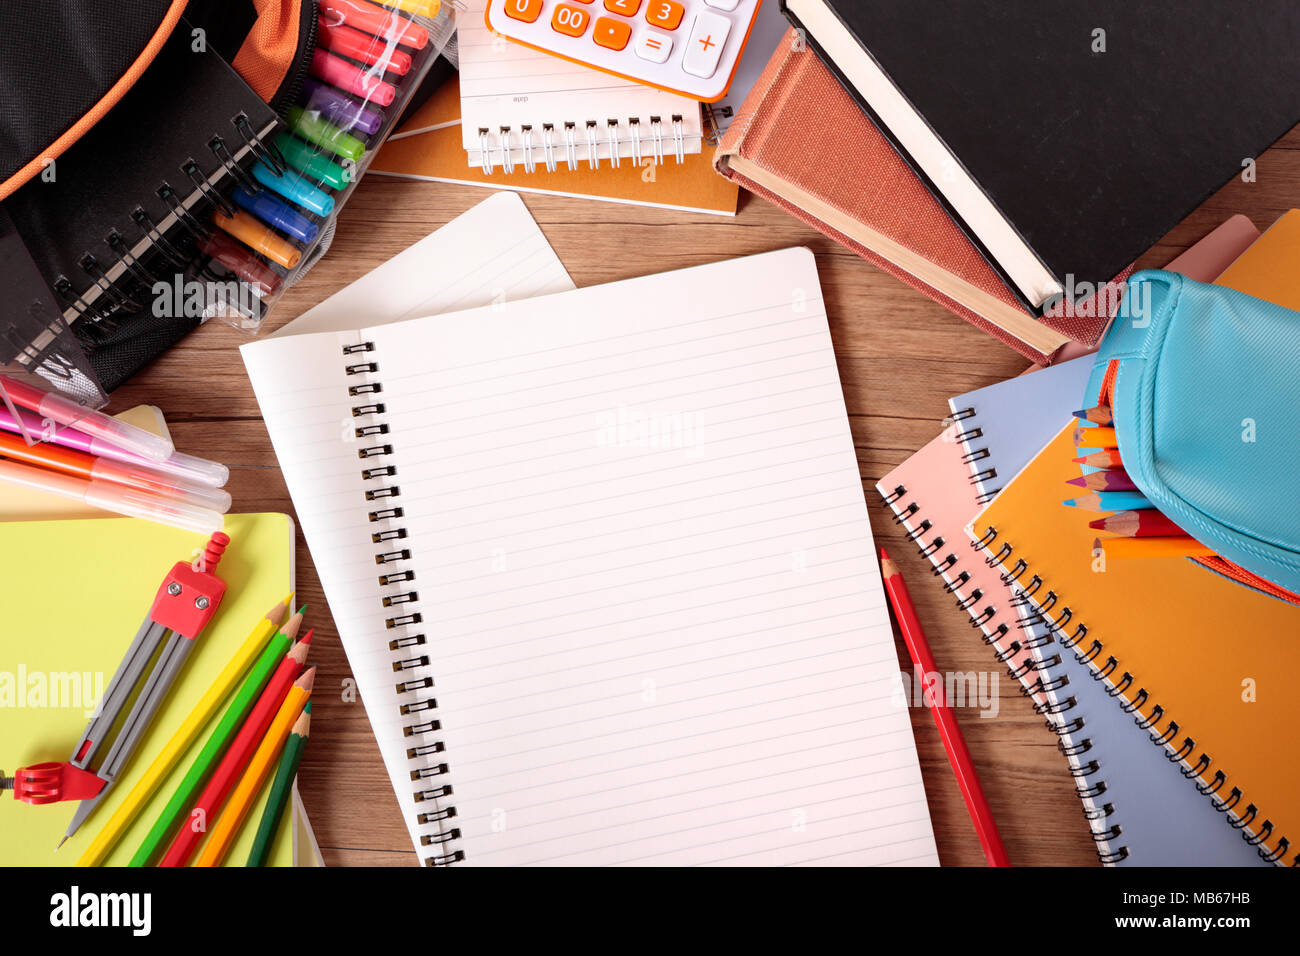 Escritorio del alumno ocupado con bloc de notas abierto, bolsa escolar,  libros de texto y varios lápices y lápices de colores Fotografía de stock -  Alamy